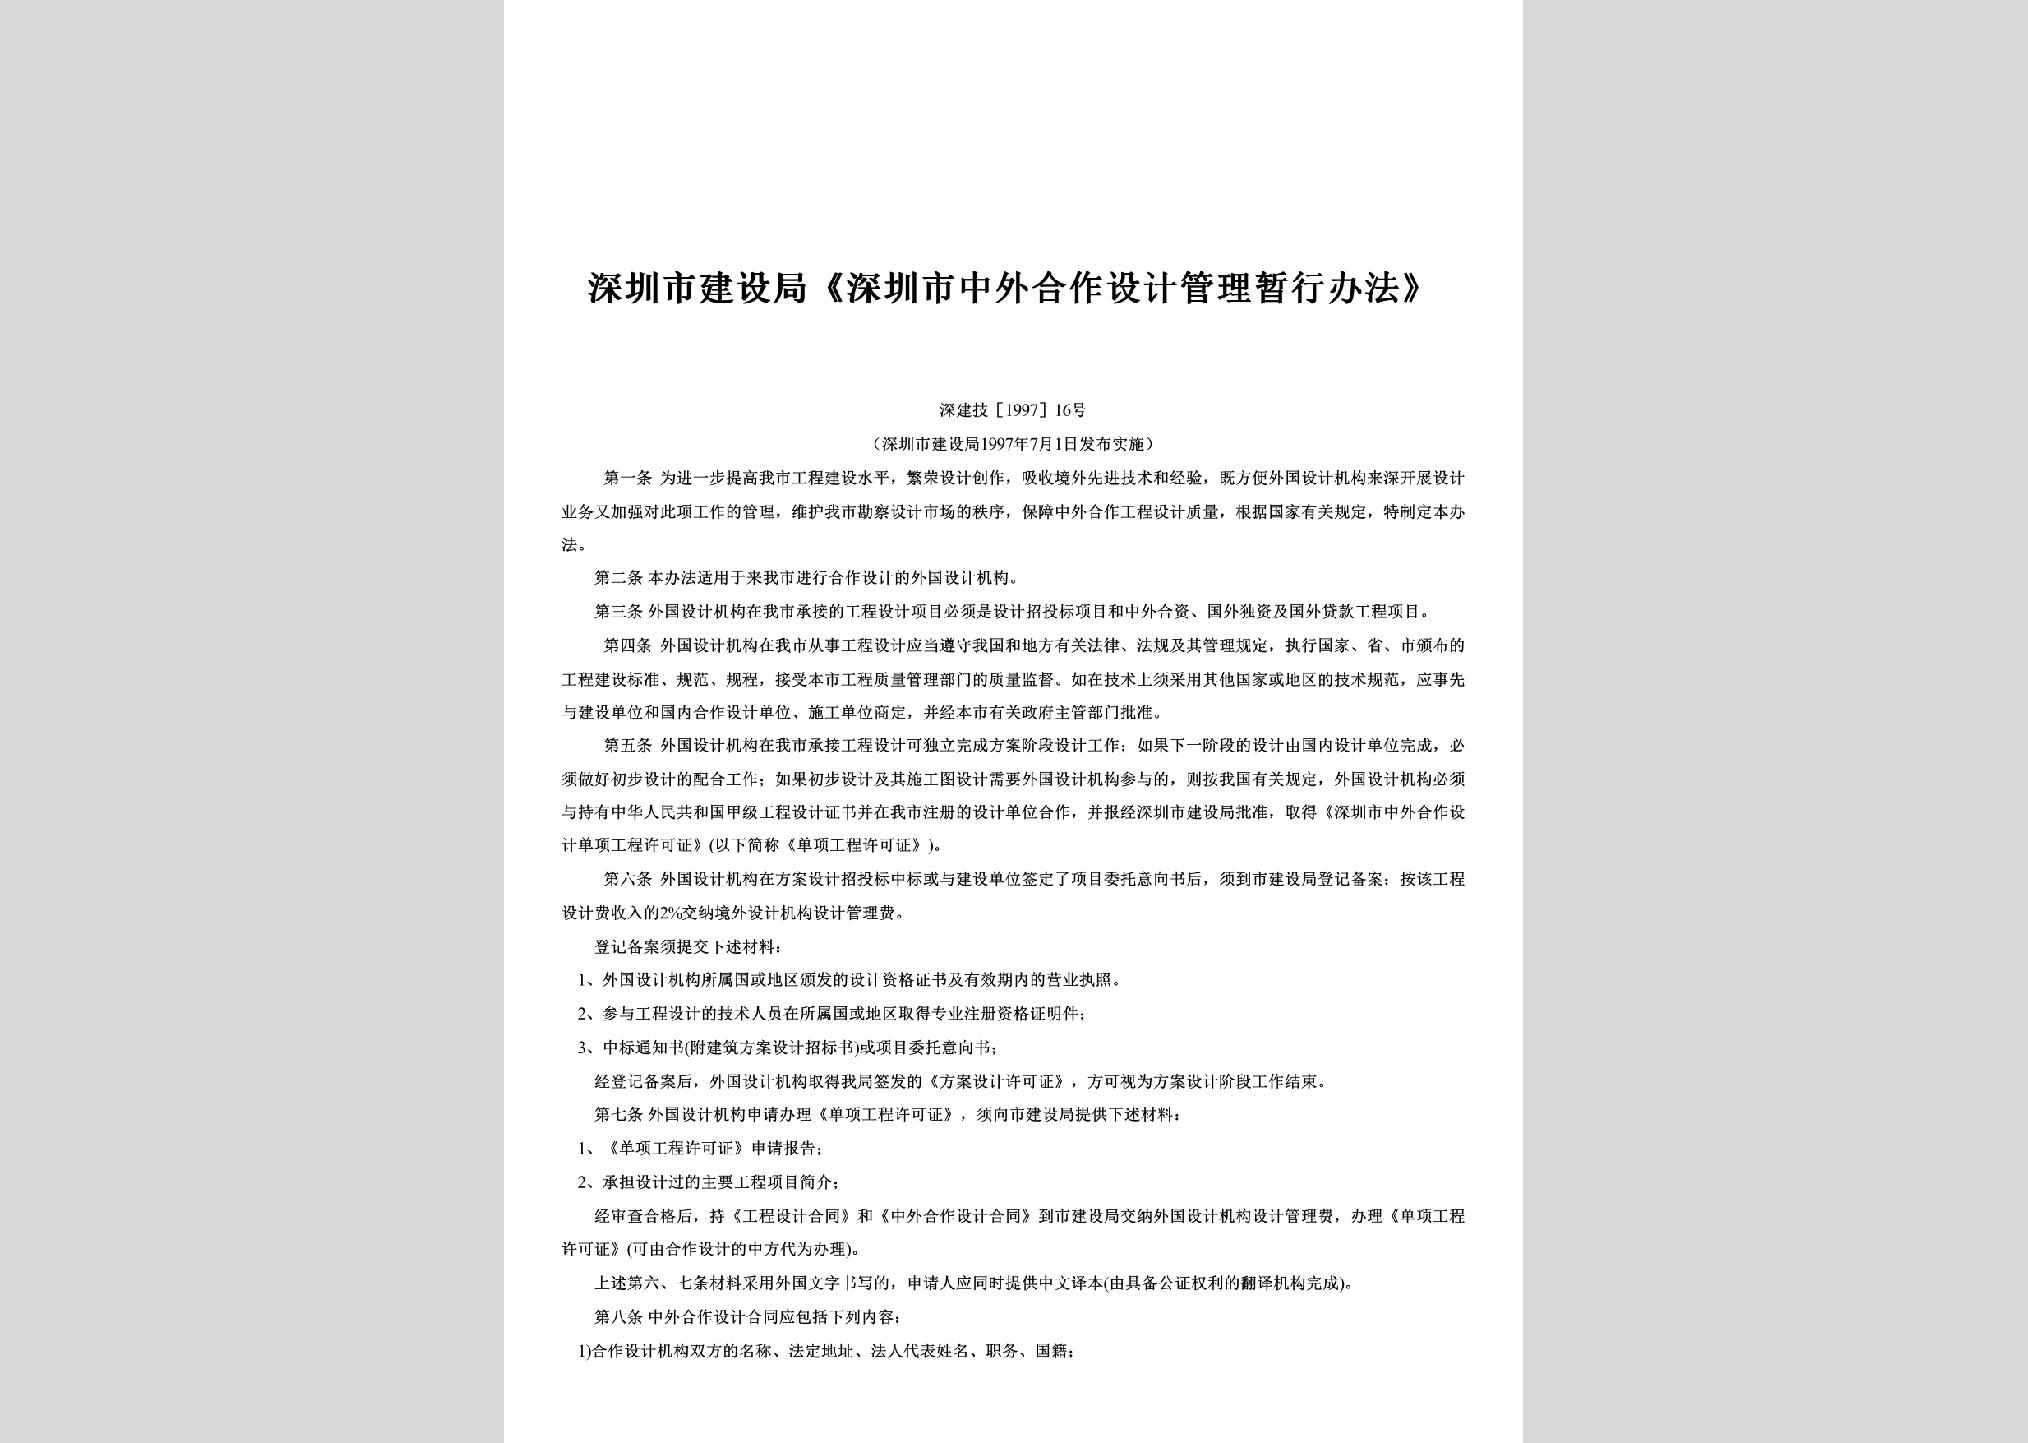 深建技[1997]16号：《深圳市中外合作设计管理暂行办法》